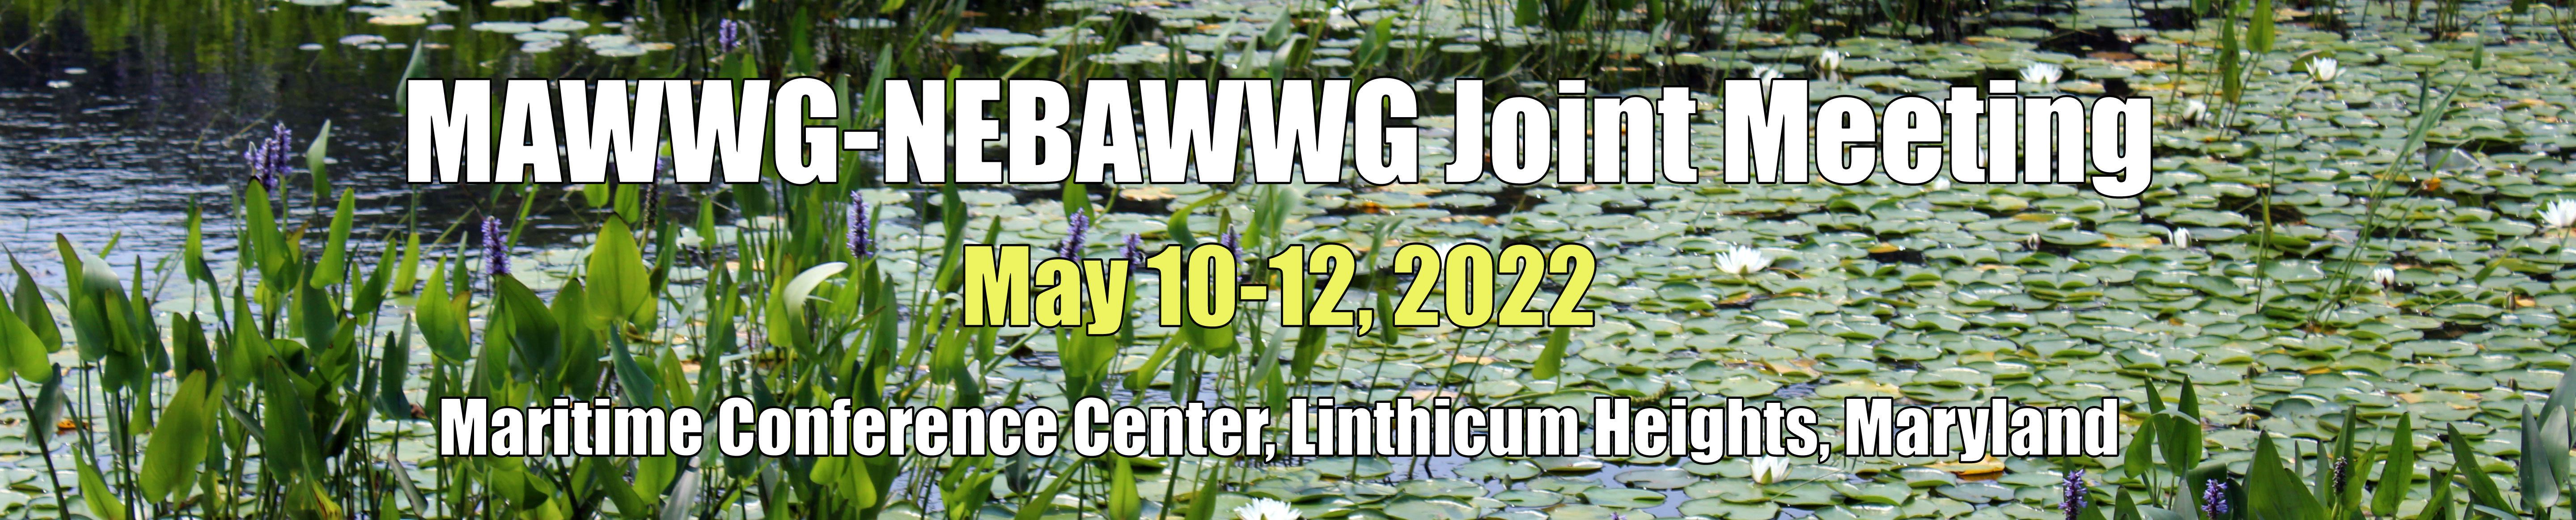 MAWWG-NEBAWWG- Joint Meeting